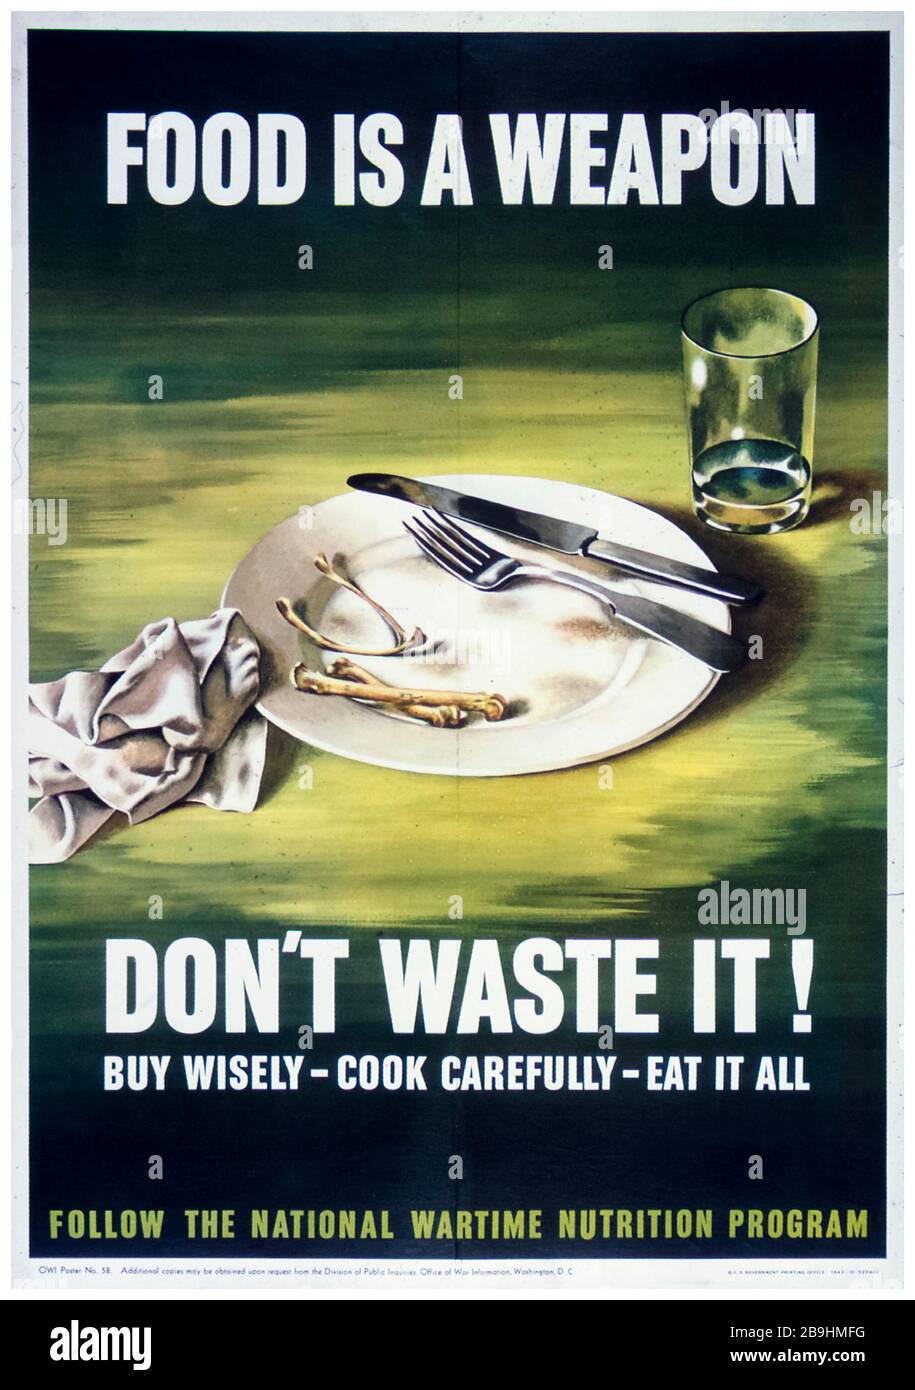 Póster estadounidense de racionamiento de alimentos de la Segunda Guerra Mundial, campaña de ahorro de alimentos, la comida es un arma - no lo desperdicie, 1941-1945 Foto de stock